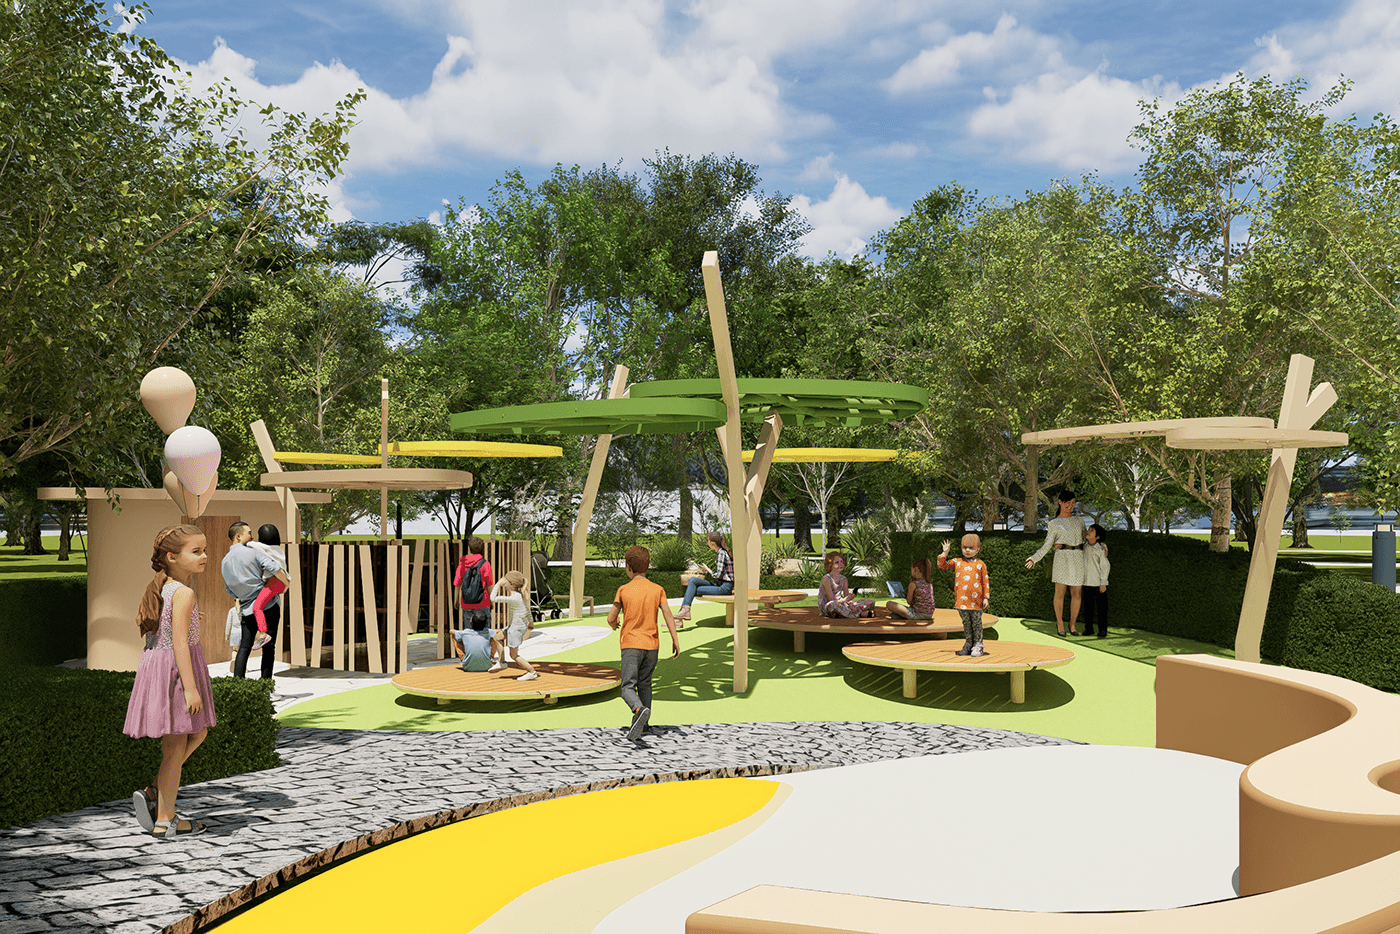 park design Landscape Design product design  inclusive design Playscape Design play design nature scape shading design